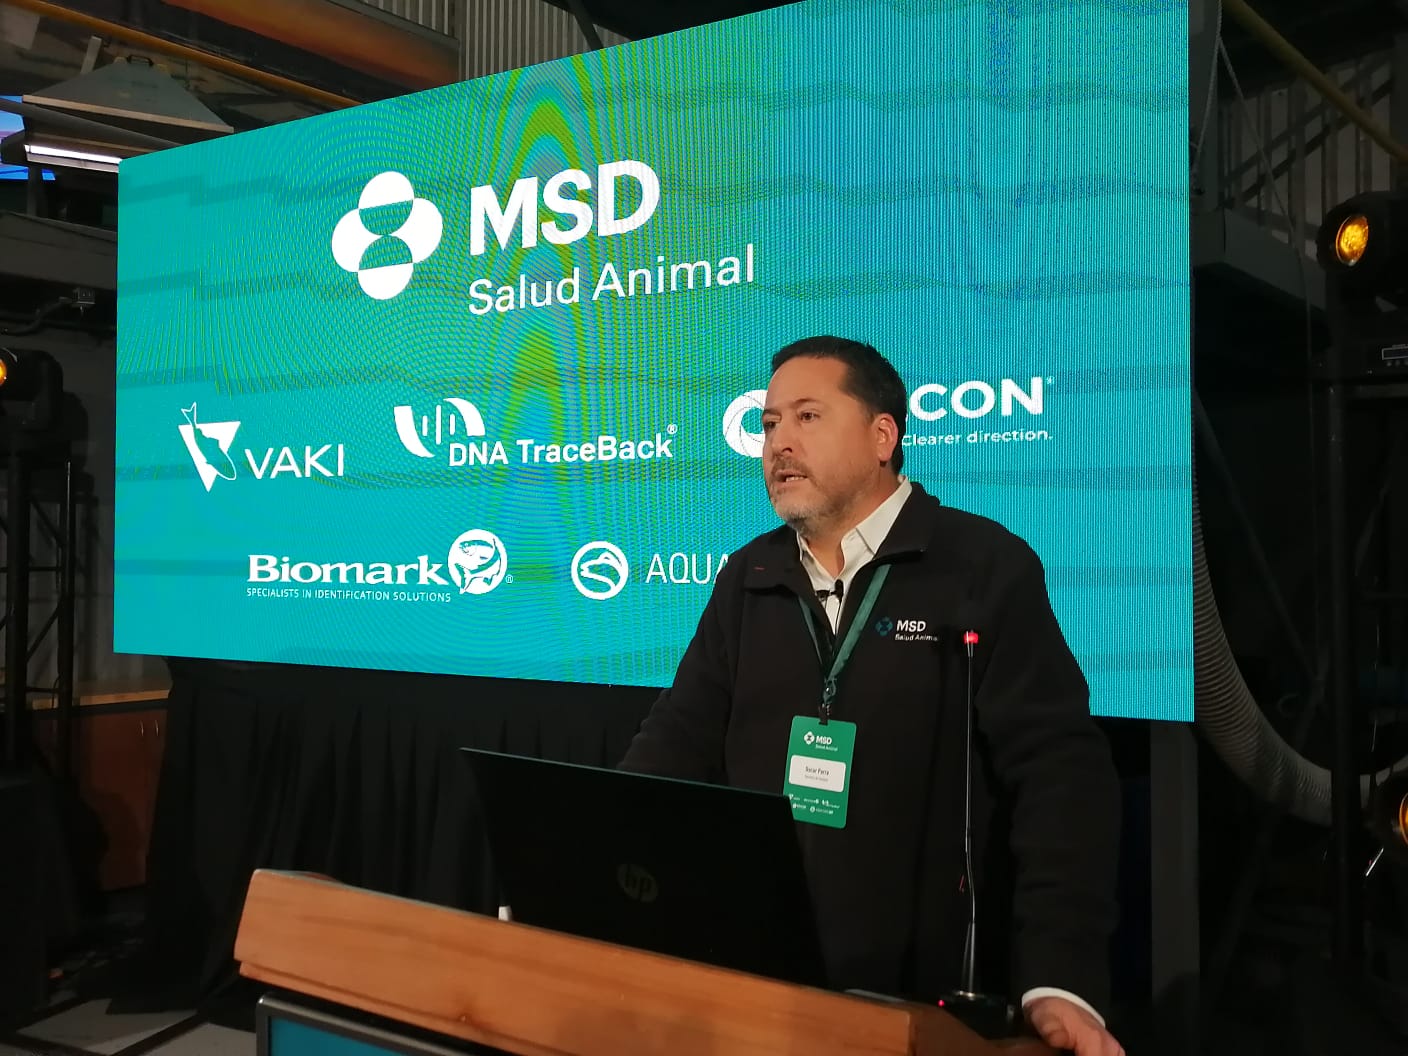 Unidad de acuicultura de MSD Salud Animal presentó integración de soluciones de tecnología